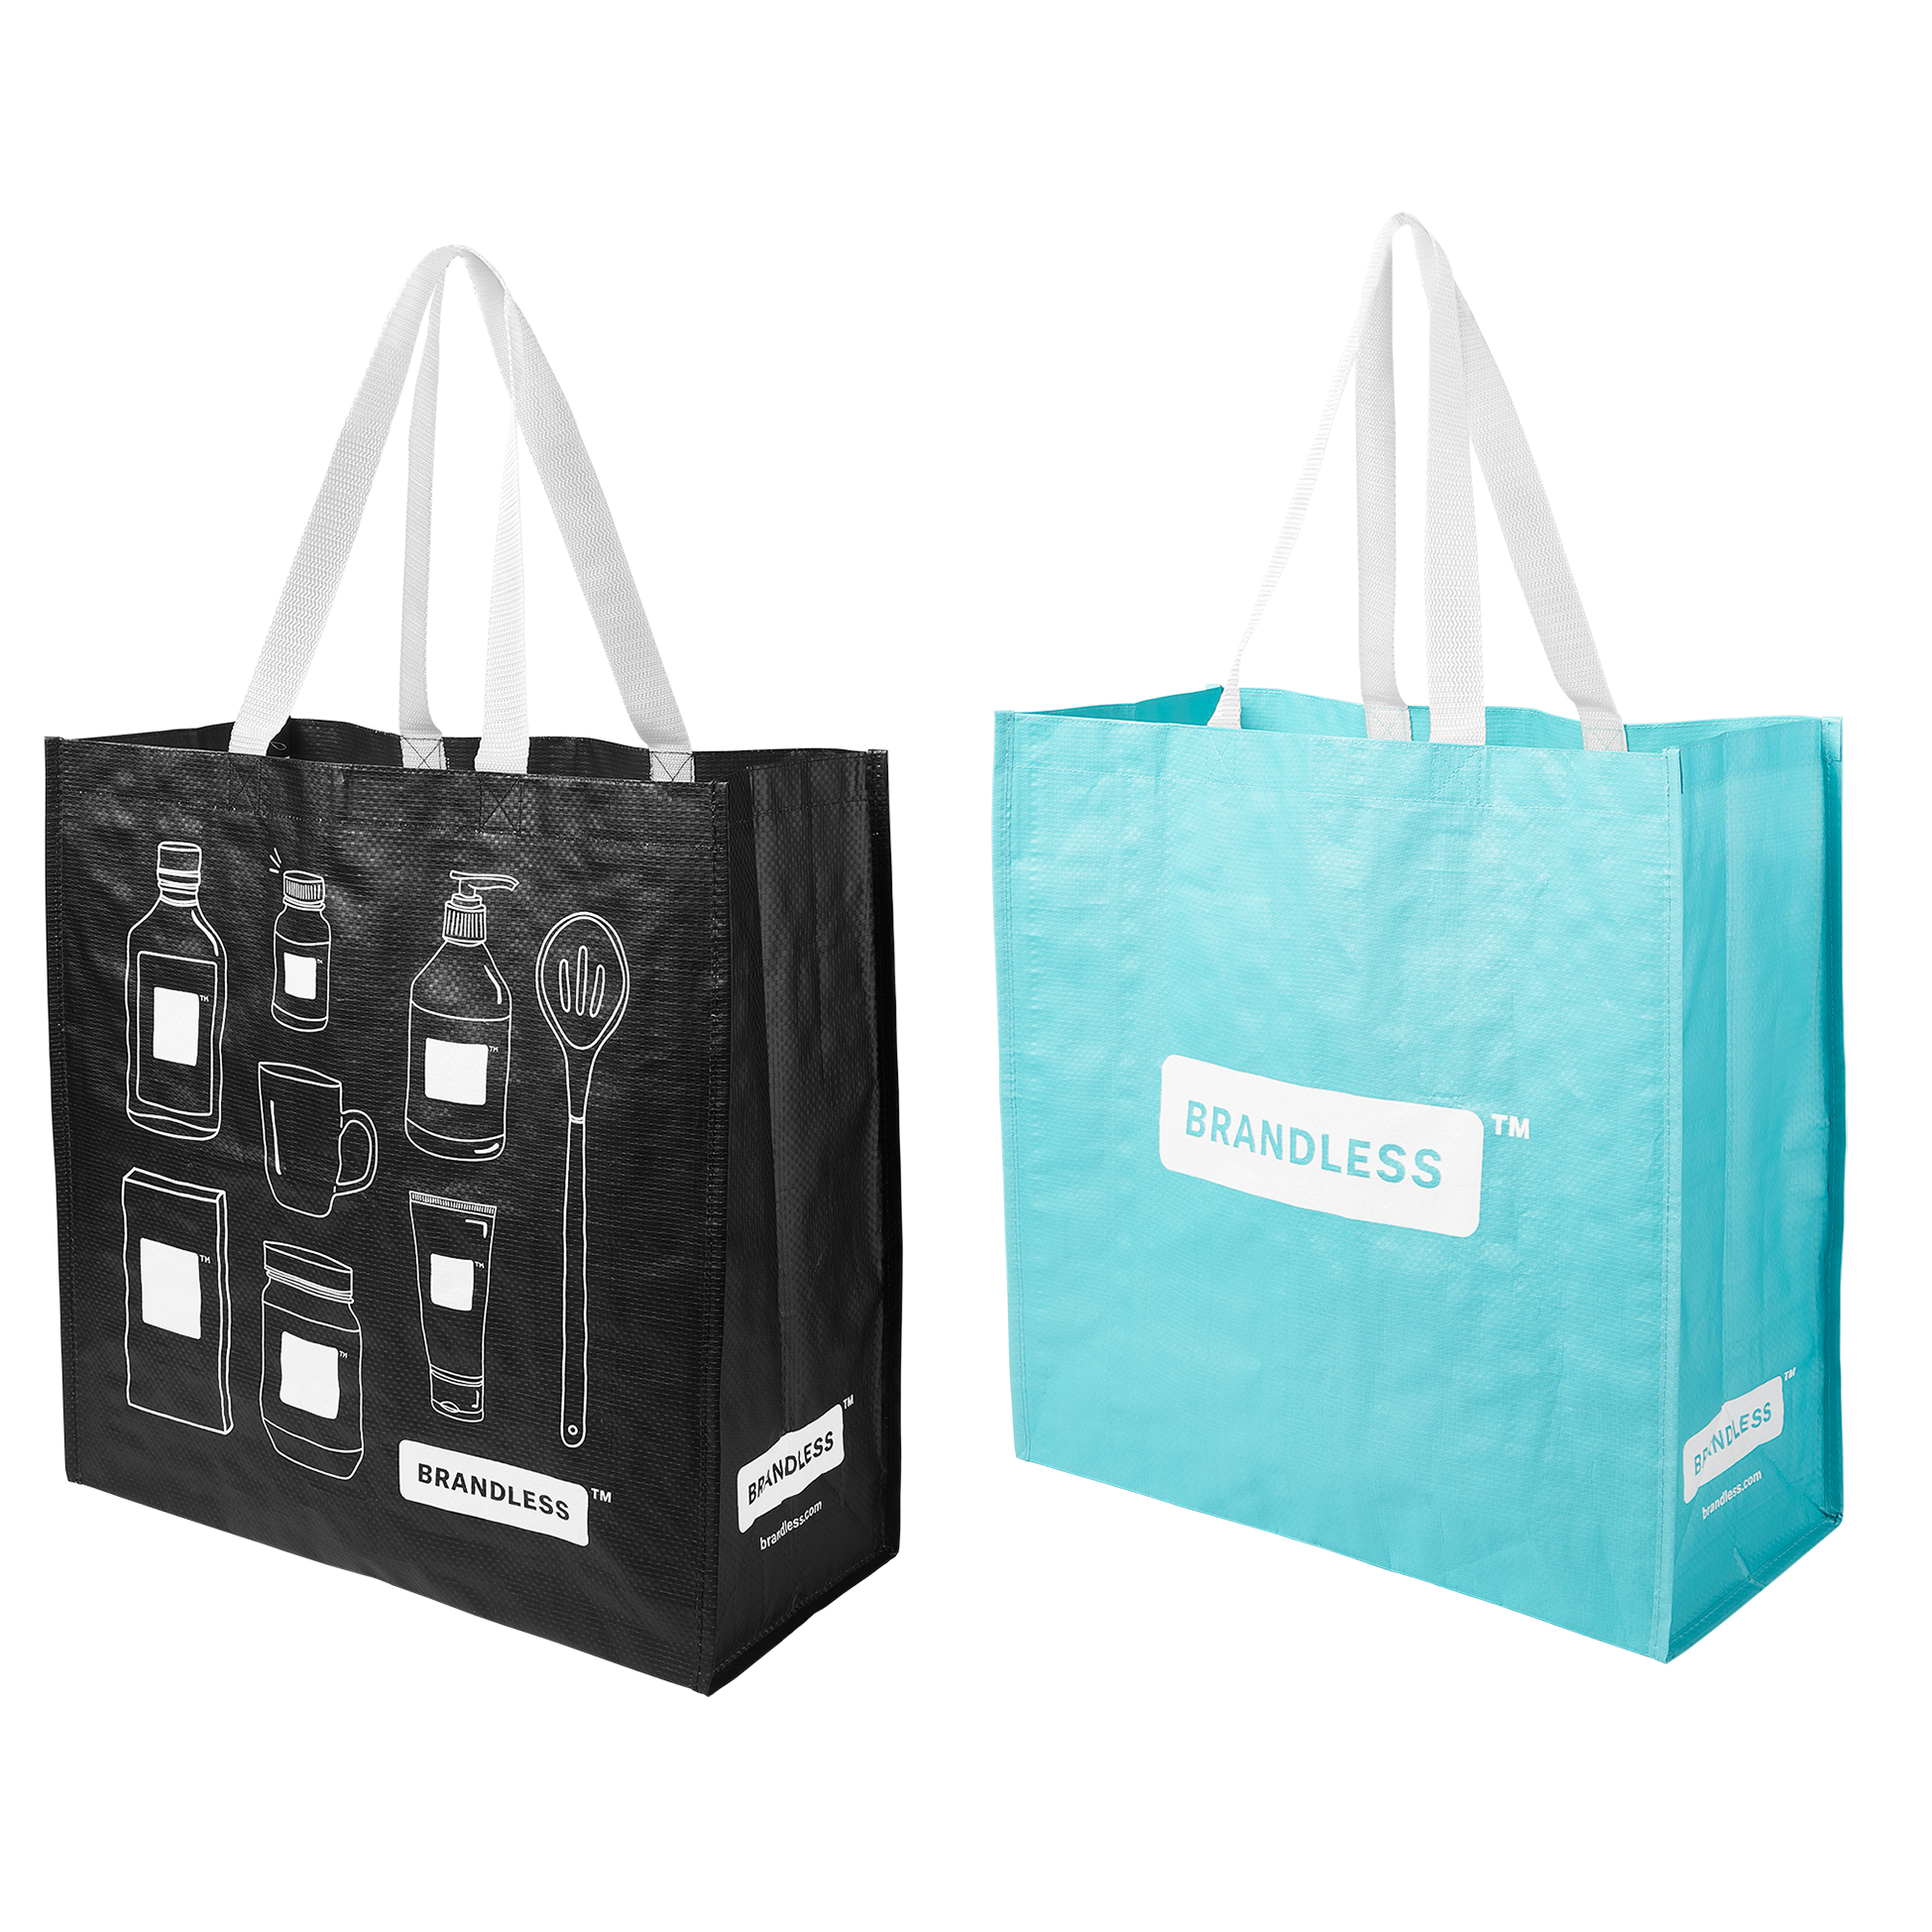 Brandless Reusable Tote Bag - 2 Pack